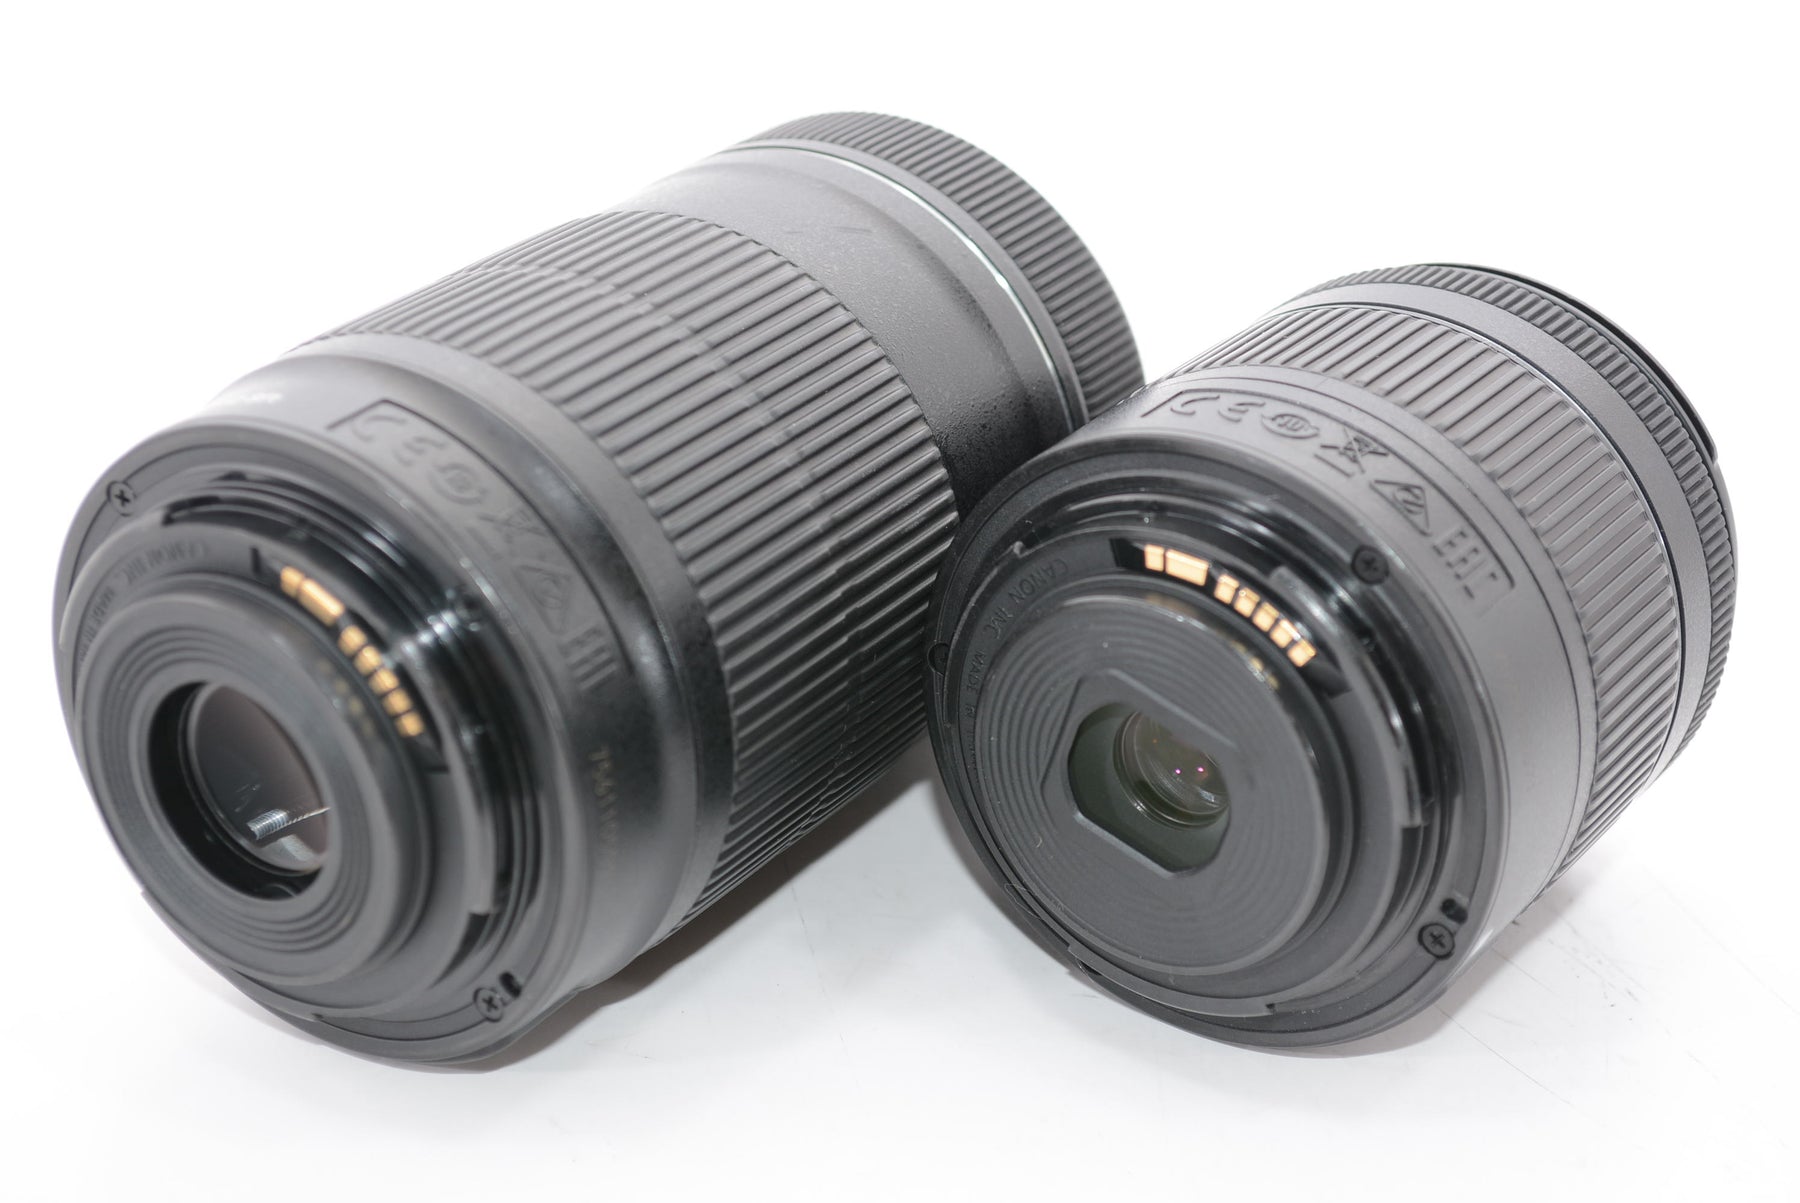 【外観特上級】Canon デジタル一眼レフカメラ EOS Kiss X10 ダブルズームキット ブラック EOSKISSX10BK-WKIT